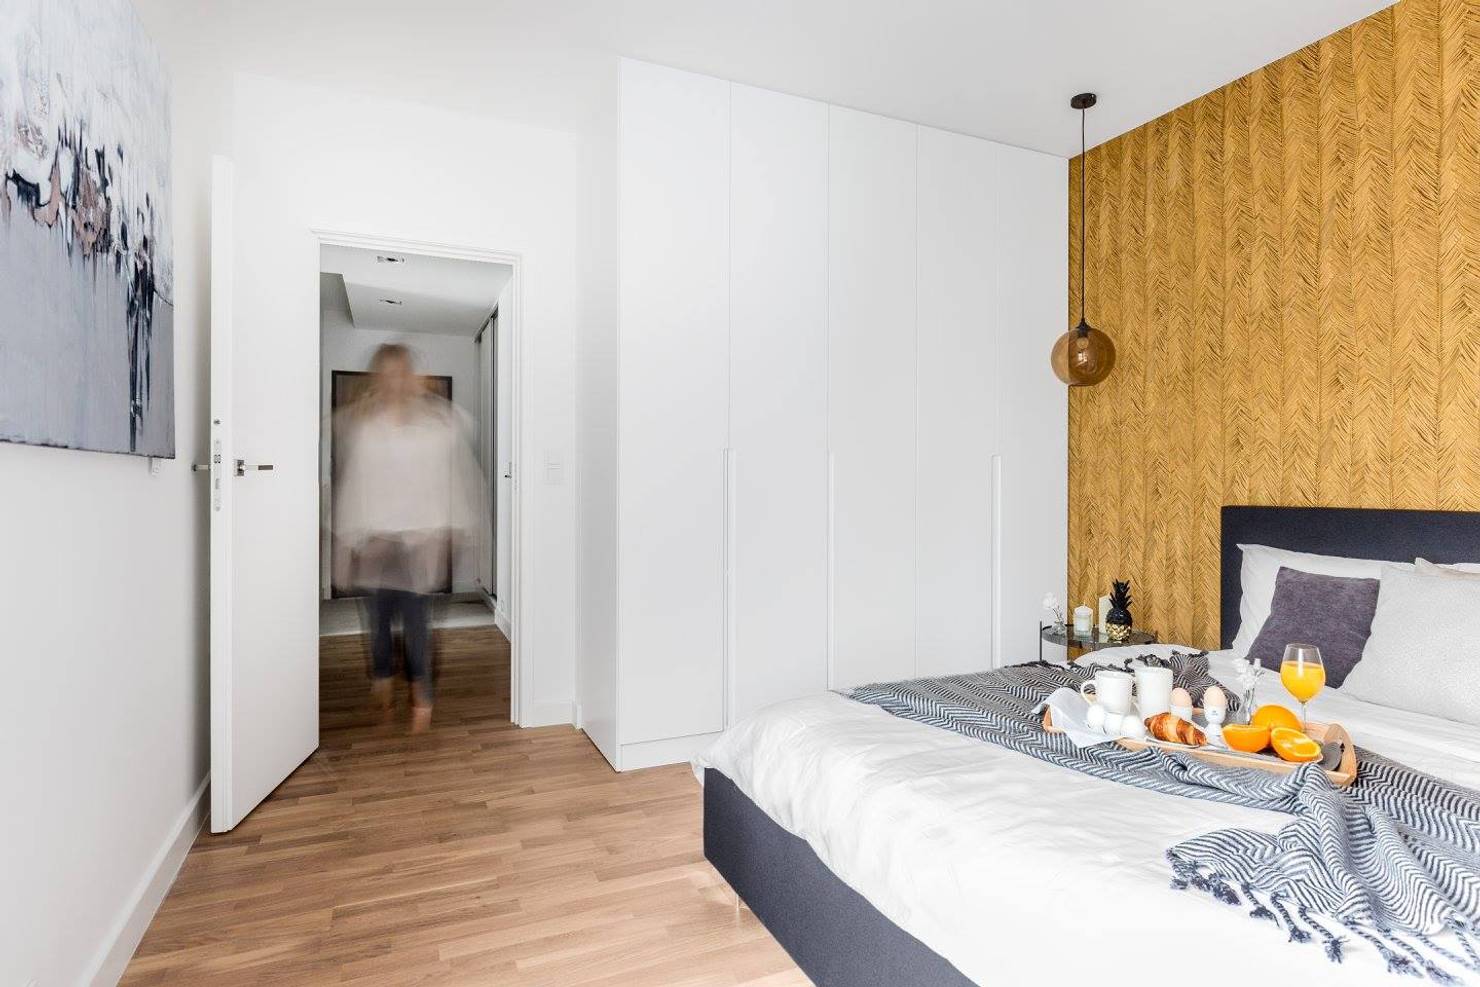 Дизайн двухкомнатной квартиры 55 квадратных метров- фотографии
				